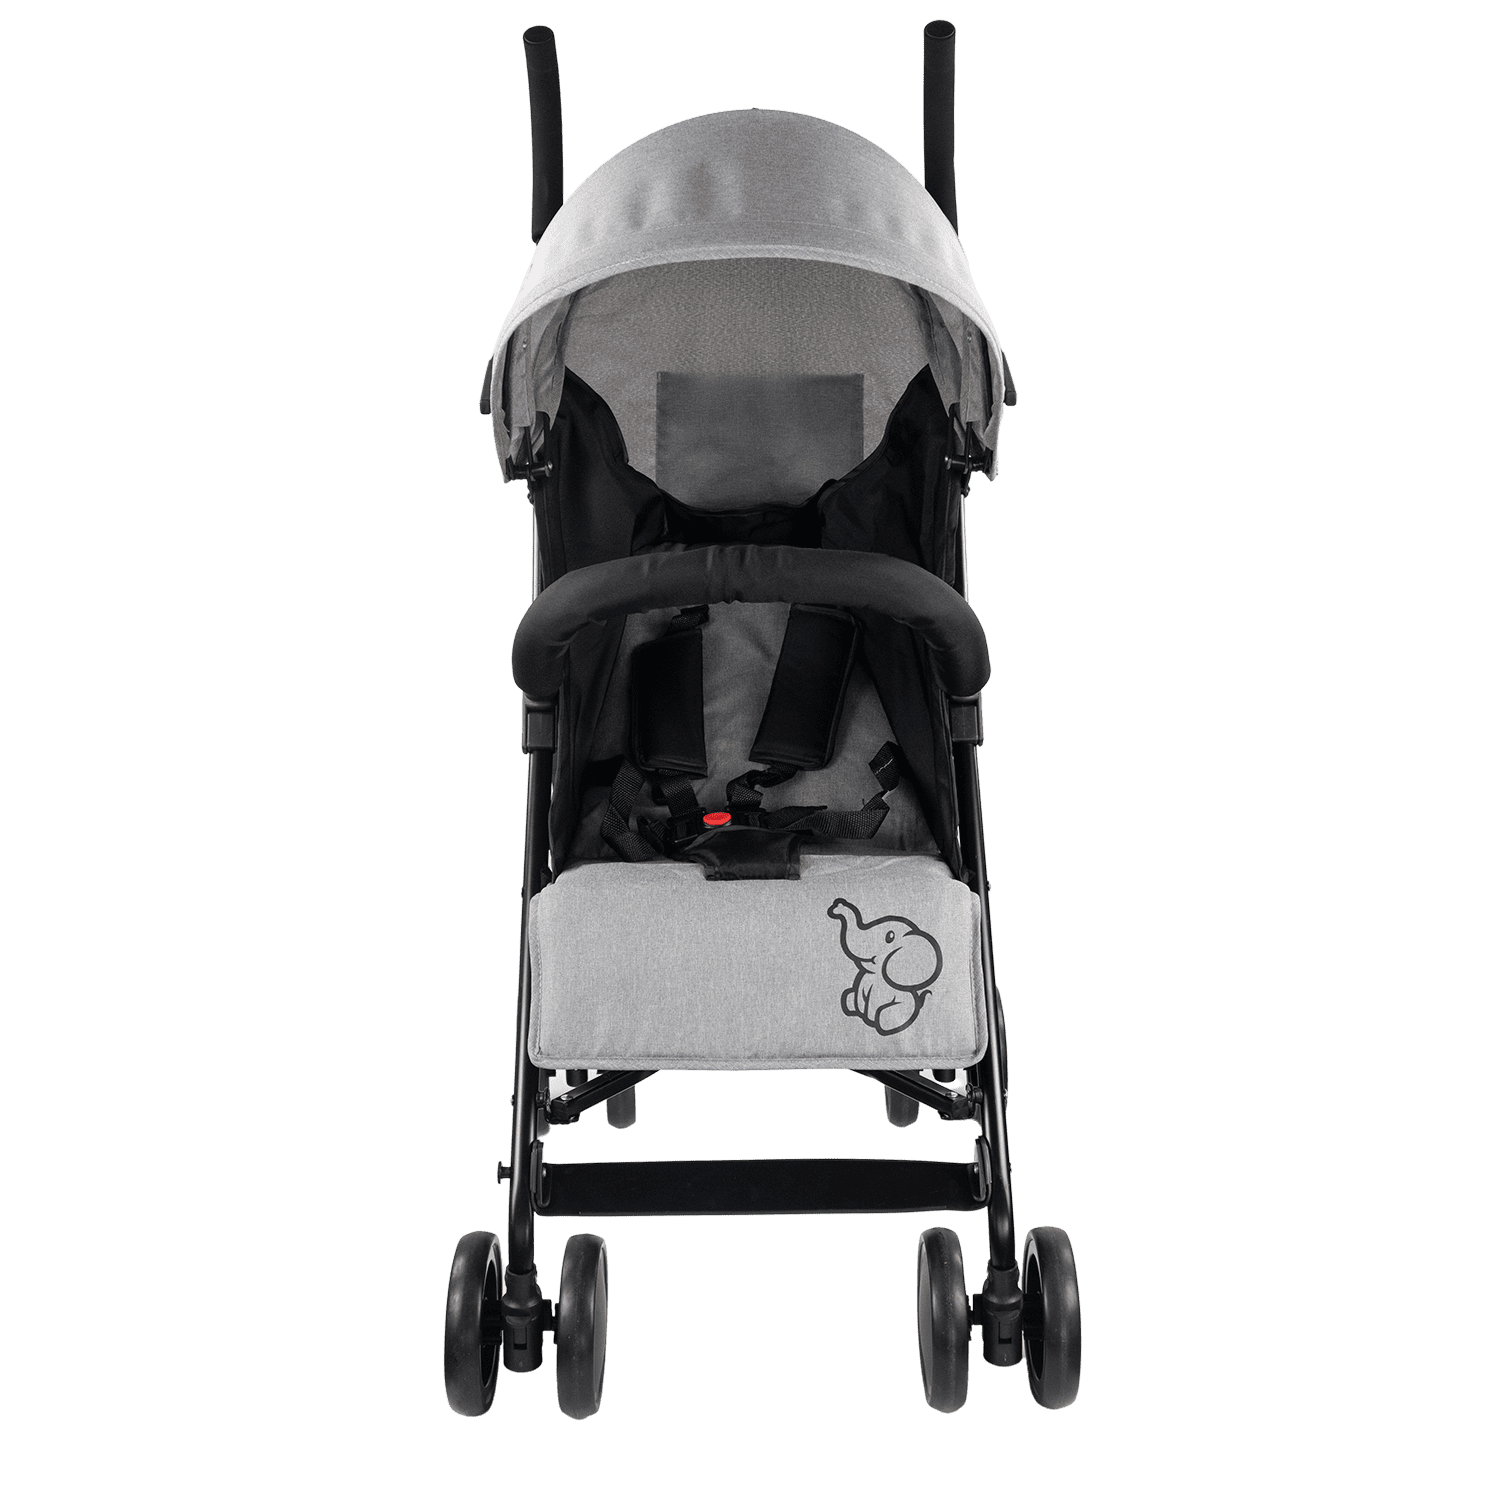 Silla de paseo plegable para bebés, Respaldo reclinable